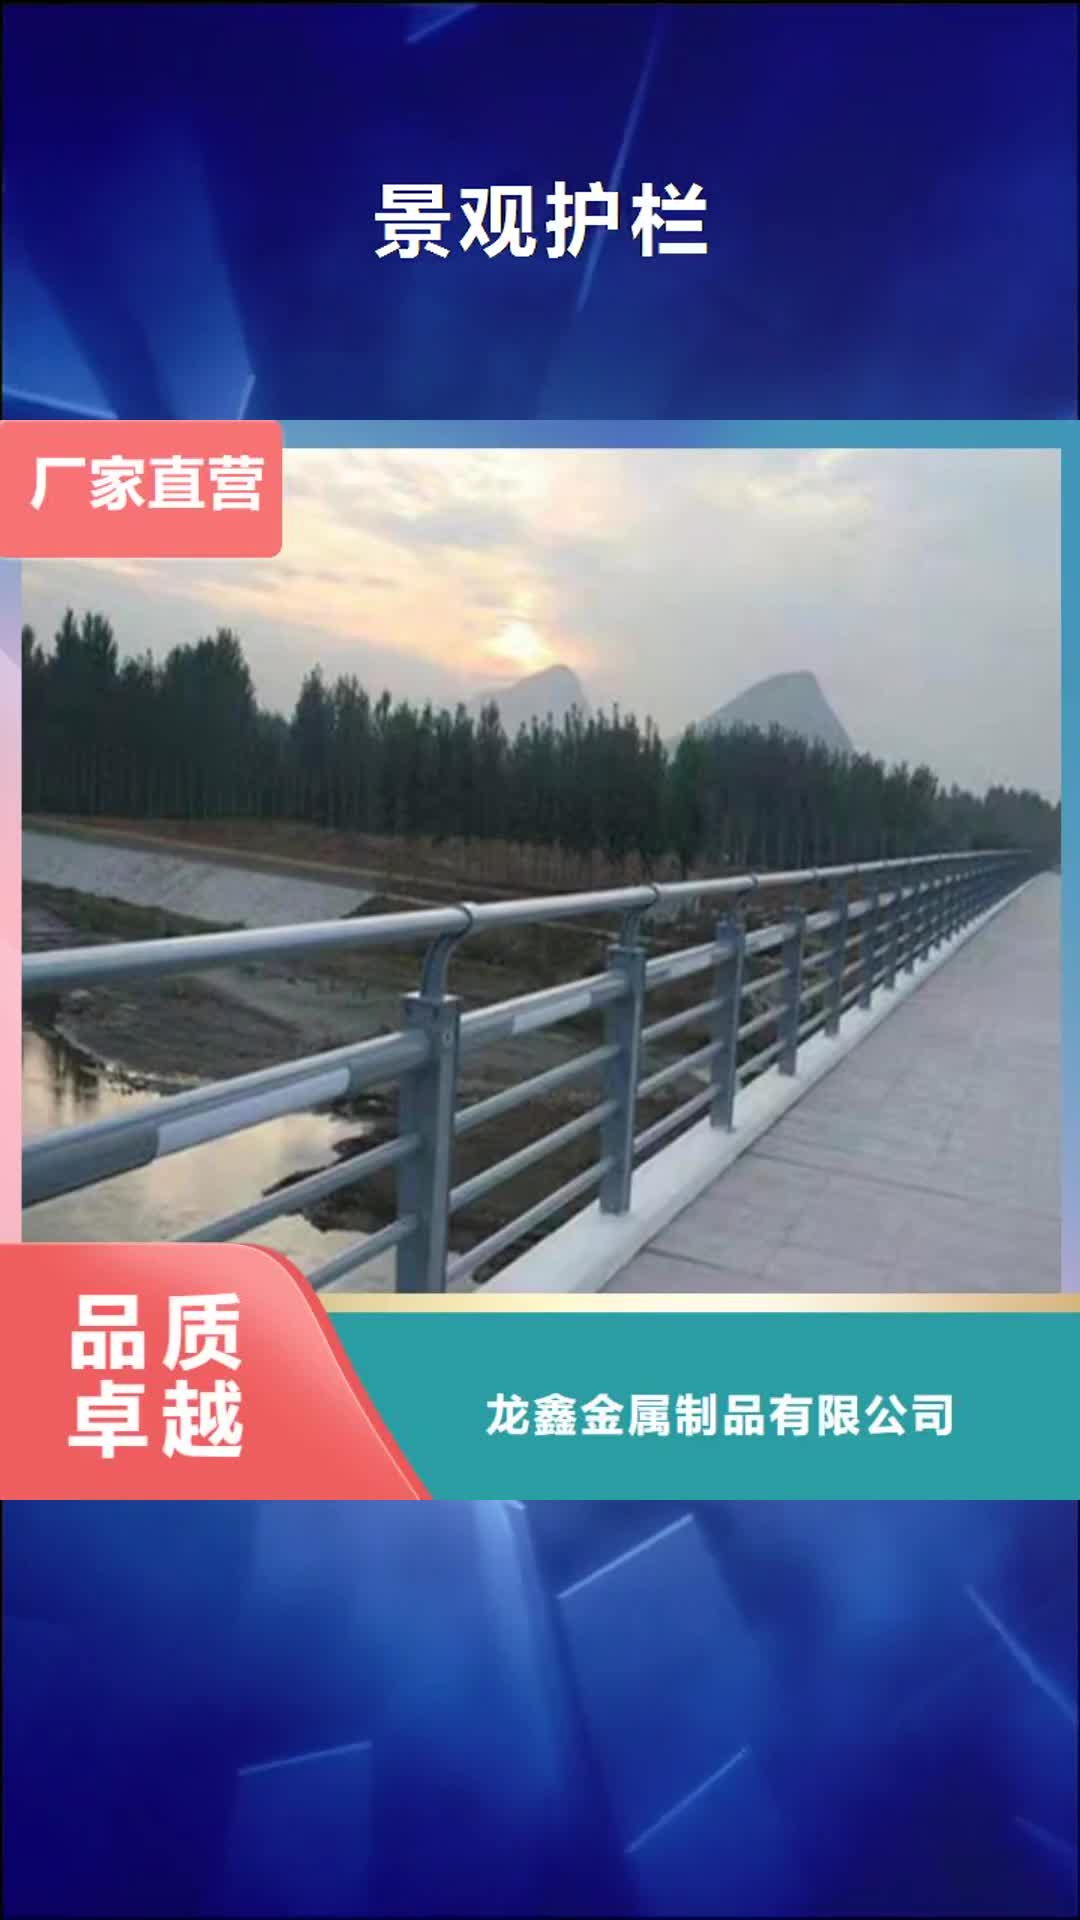 阜阳 景观护栏 【景观桥梁护栏】厂家技术完善